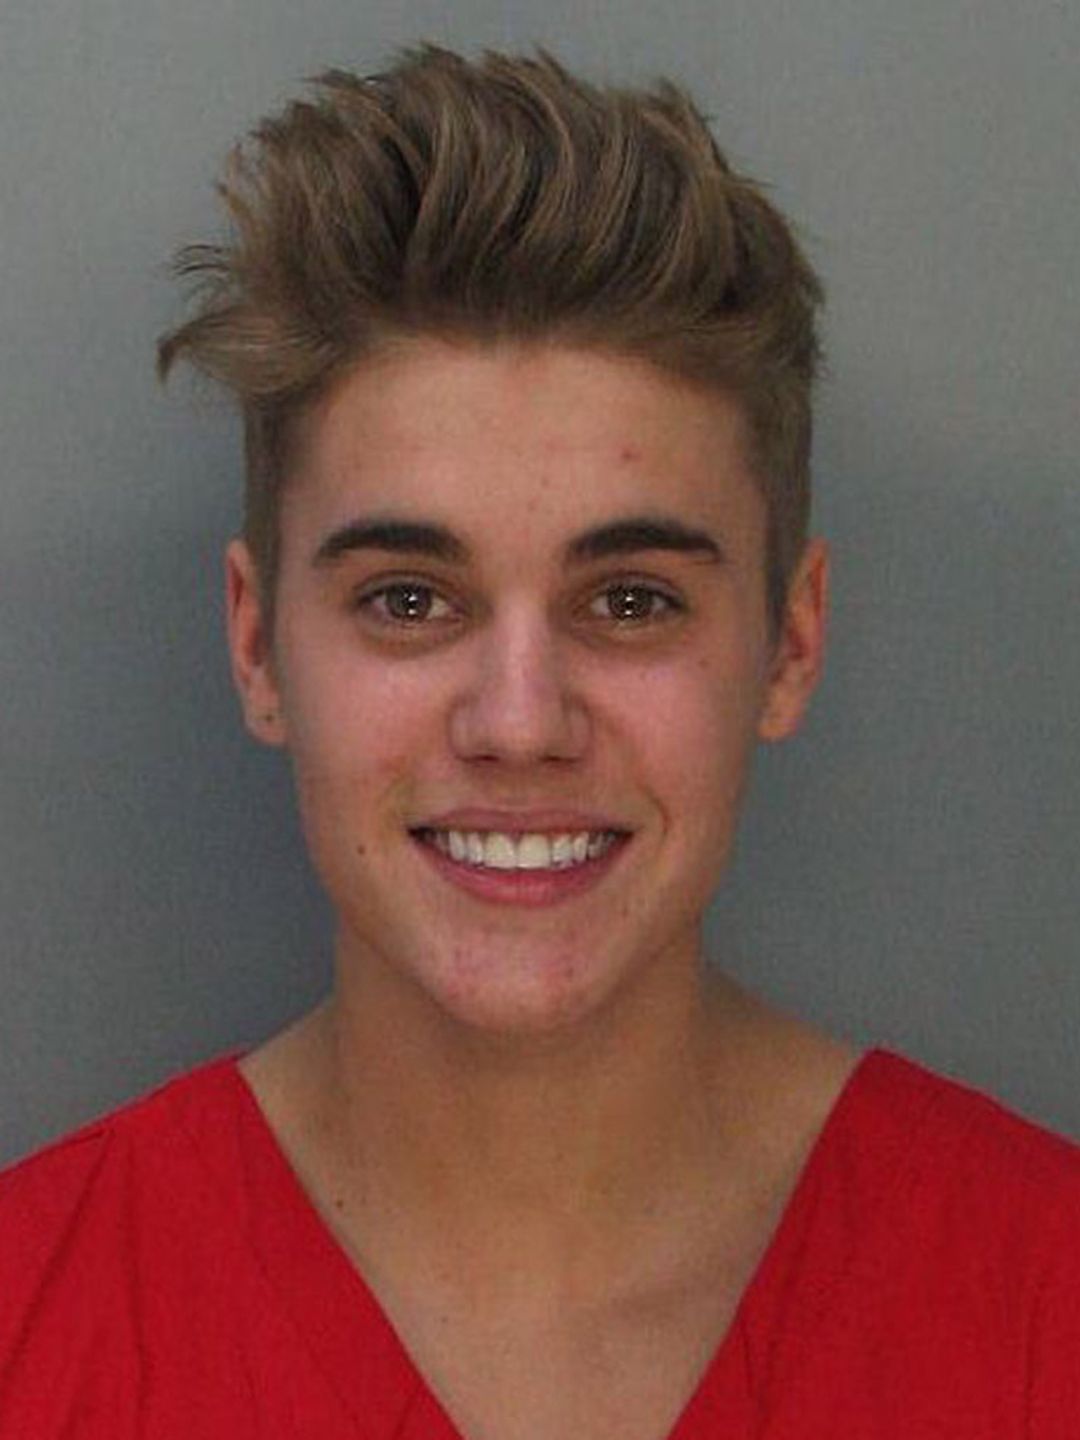 Justin Bieber smiling for mugshot in orange outfit